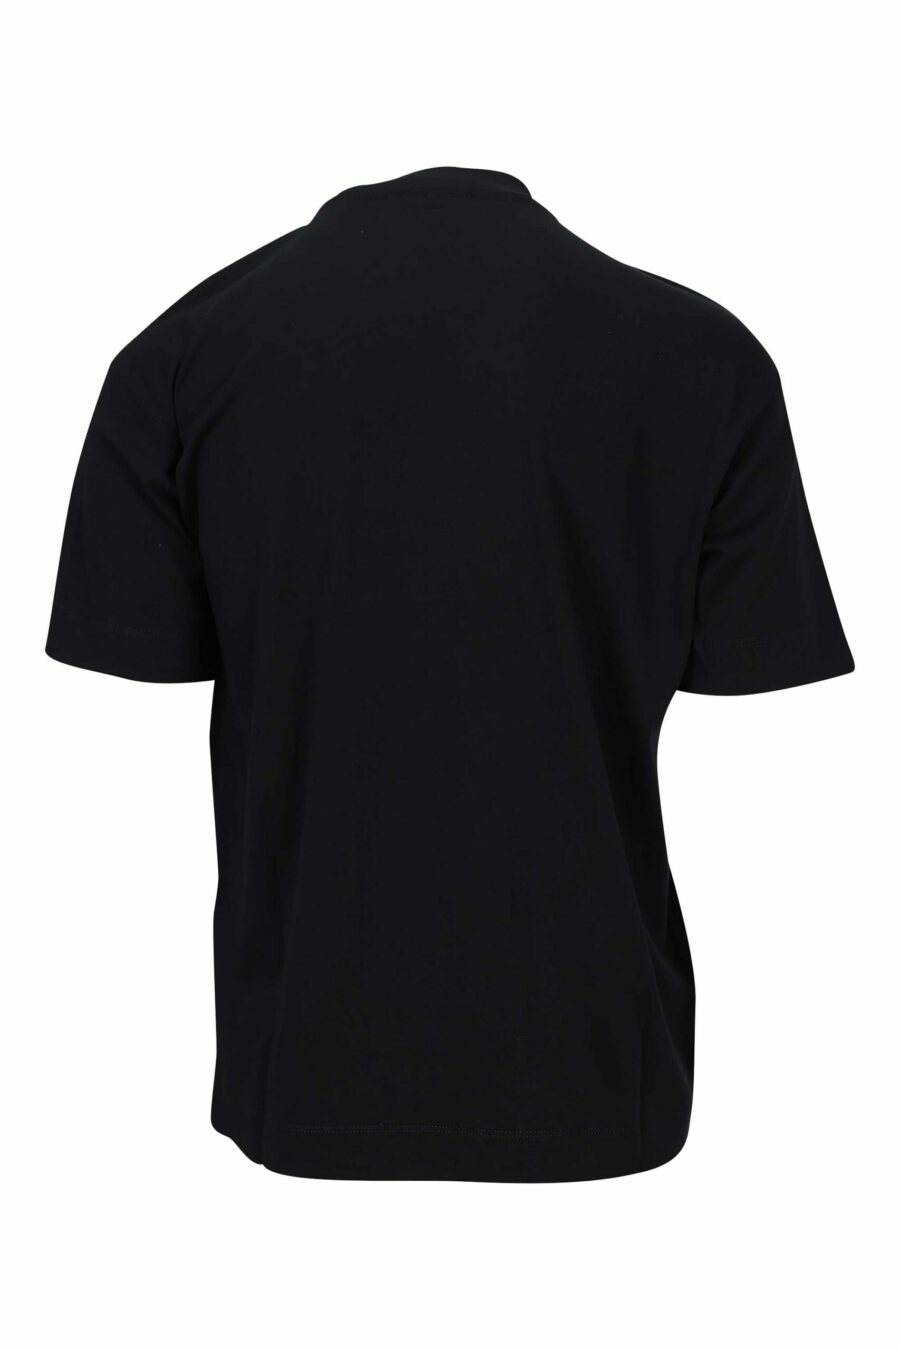 T-shirt preta com maxilogo de águia monocromática - 8057970432920 1 à escala